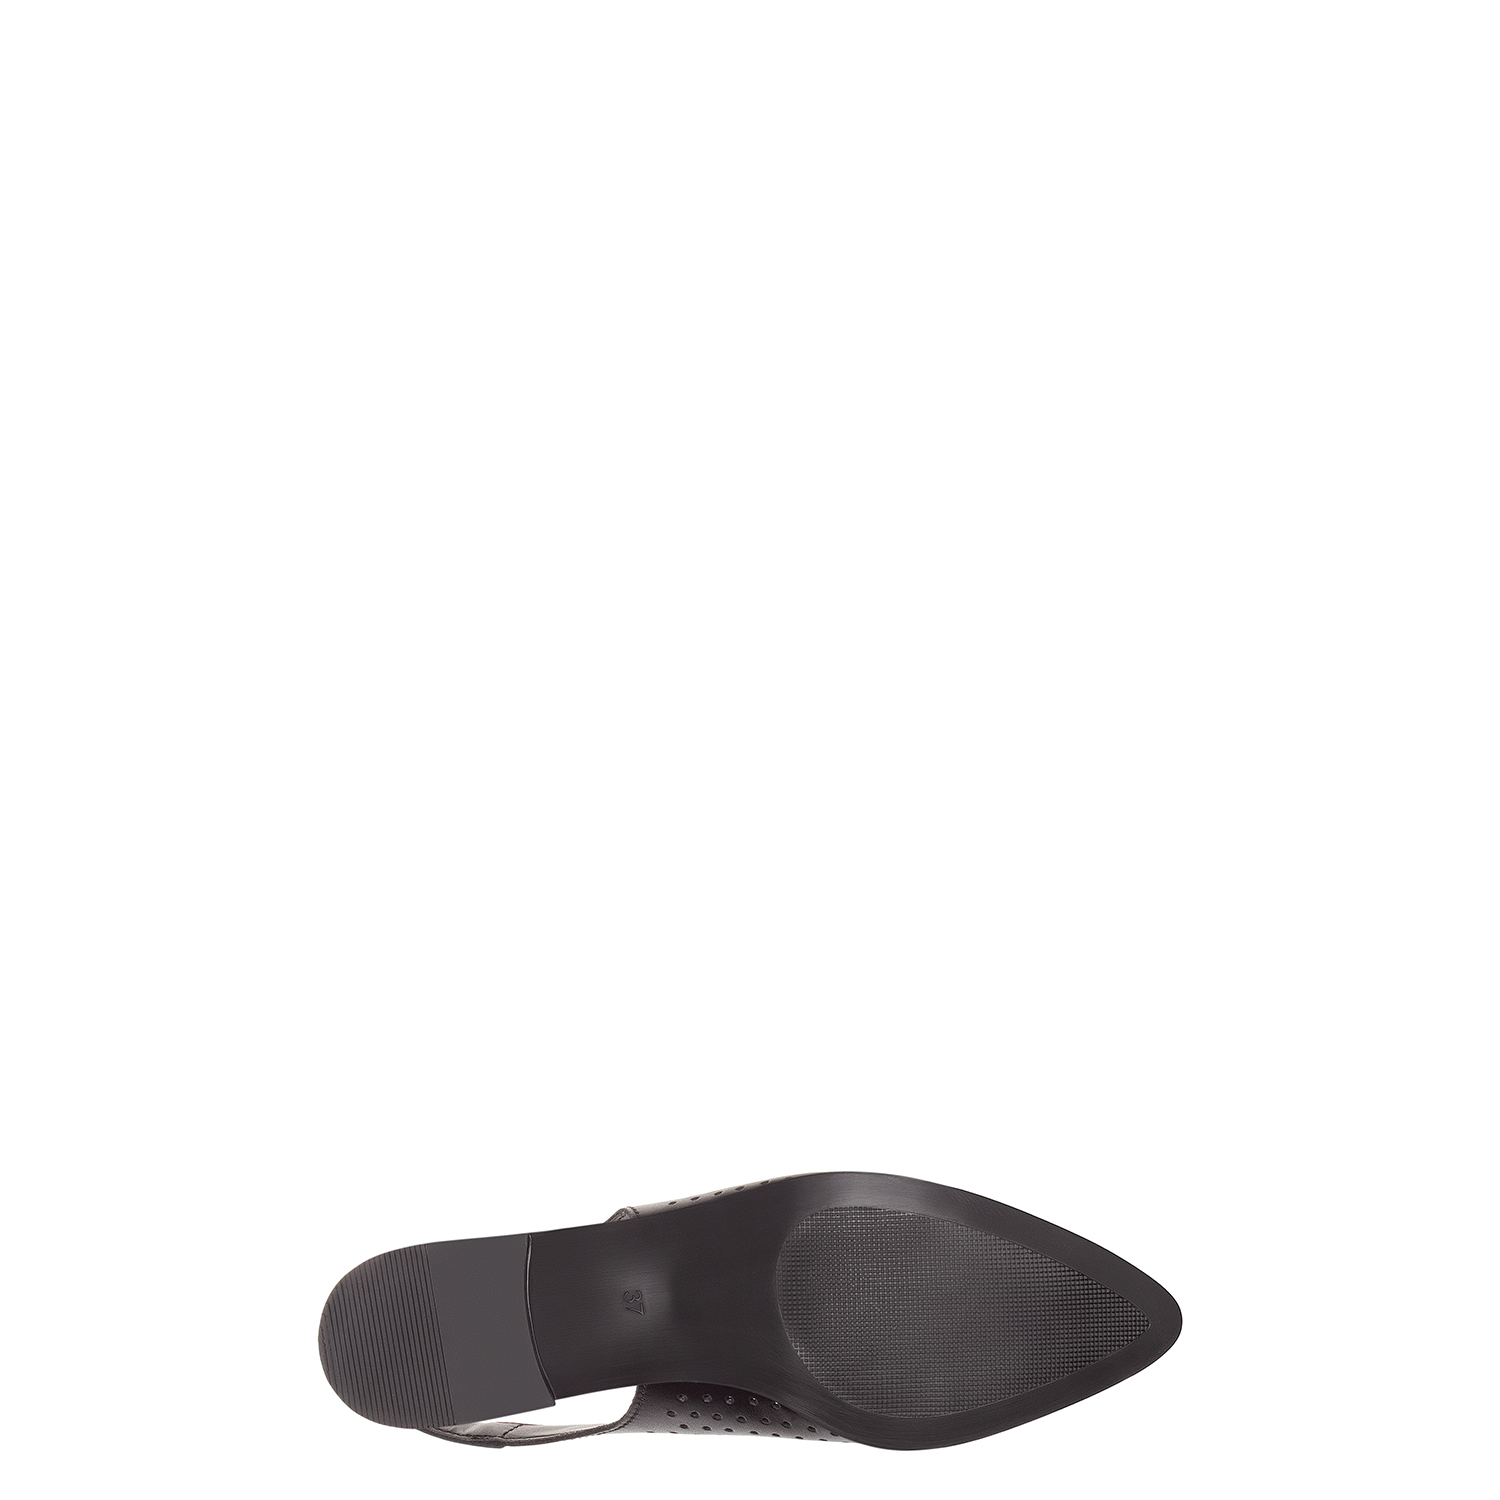 Туфли из натуральной кожи с перфорацией и открытой пяткой PAZOLINI SI-X5603-1PR